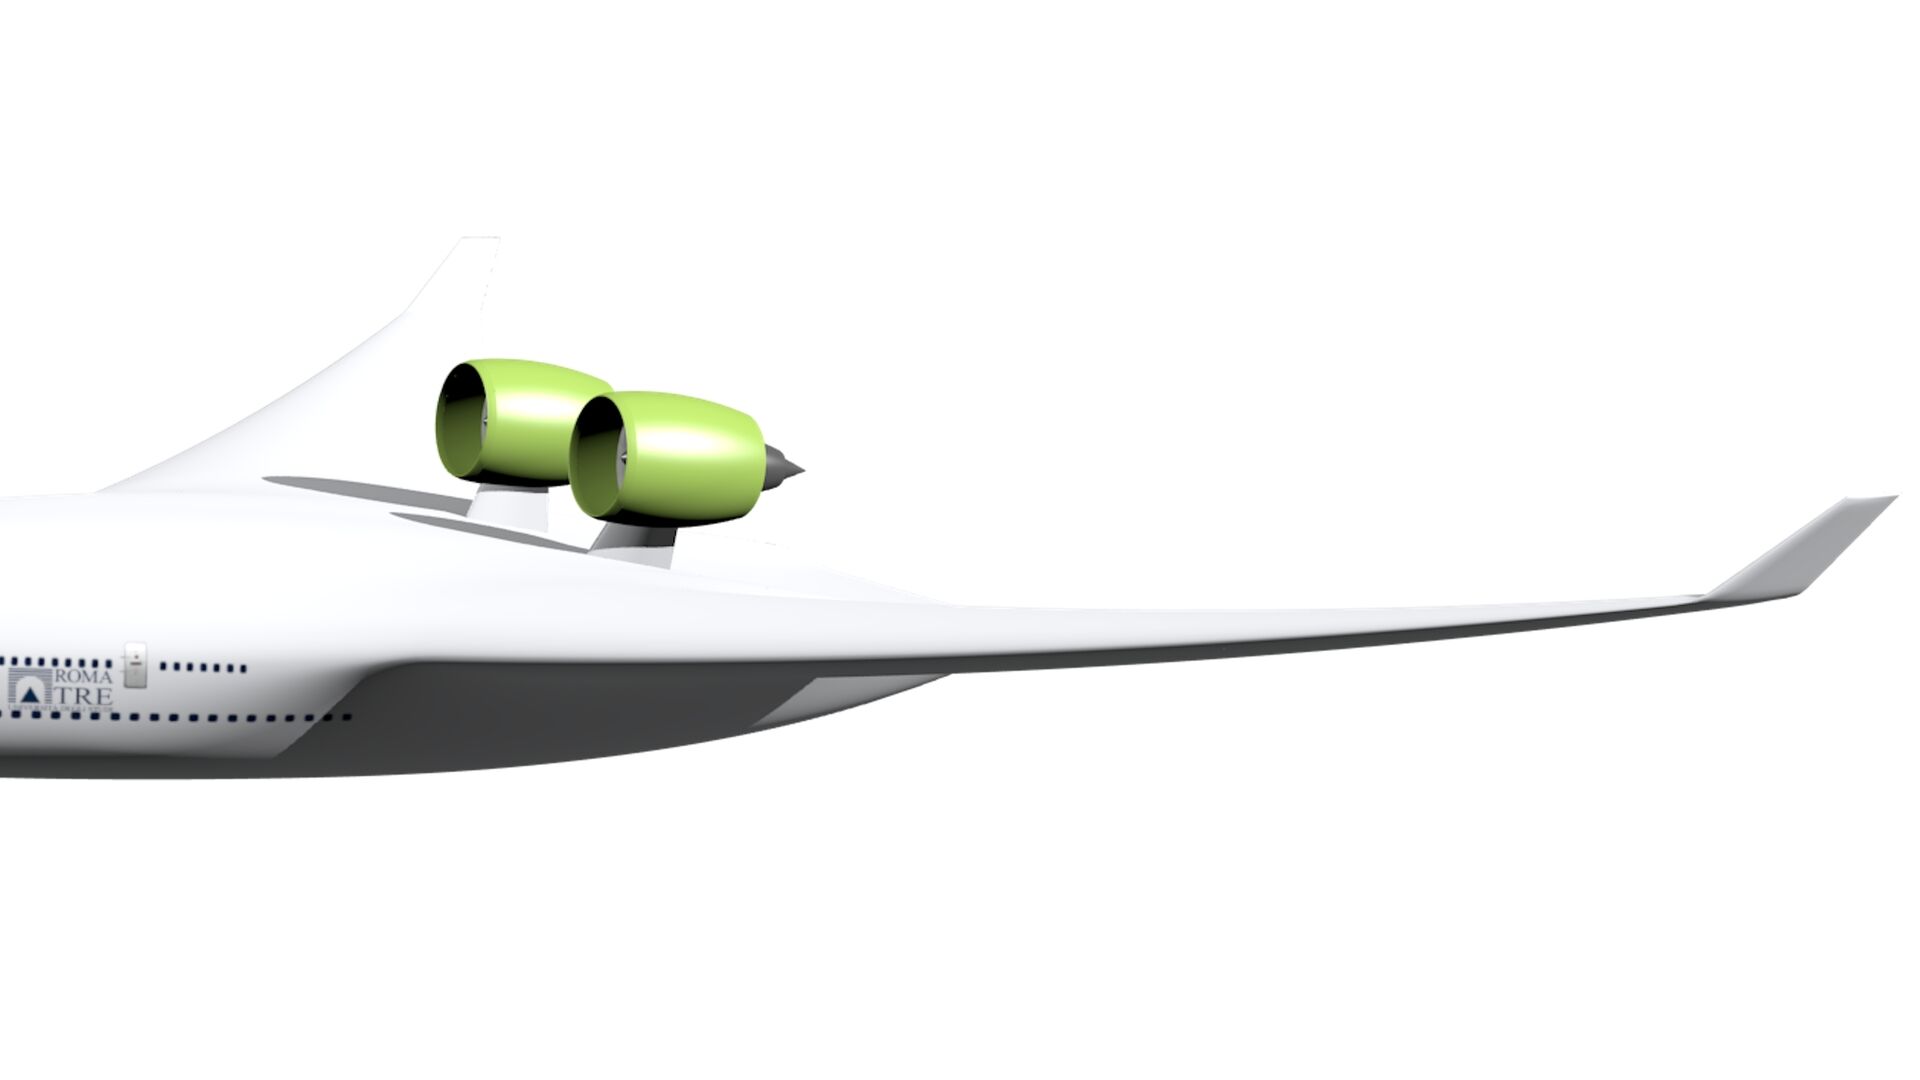 Lärm: Flugzeugkonfigurationen 2035 und 2050, Akronym BWB, vorgestellt vom ARTEM-Projekt der Europäischen Union